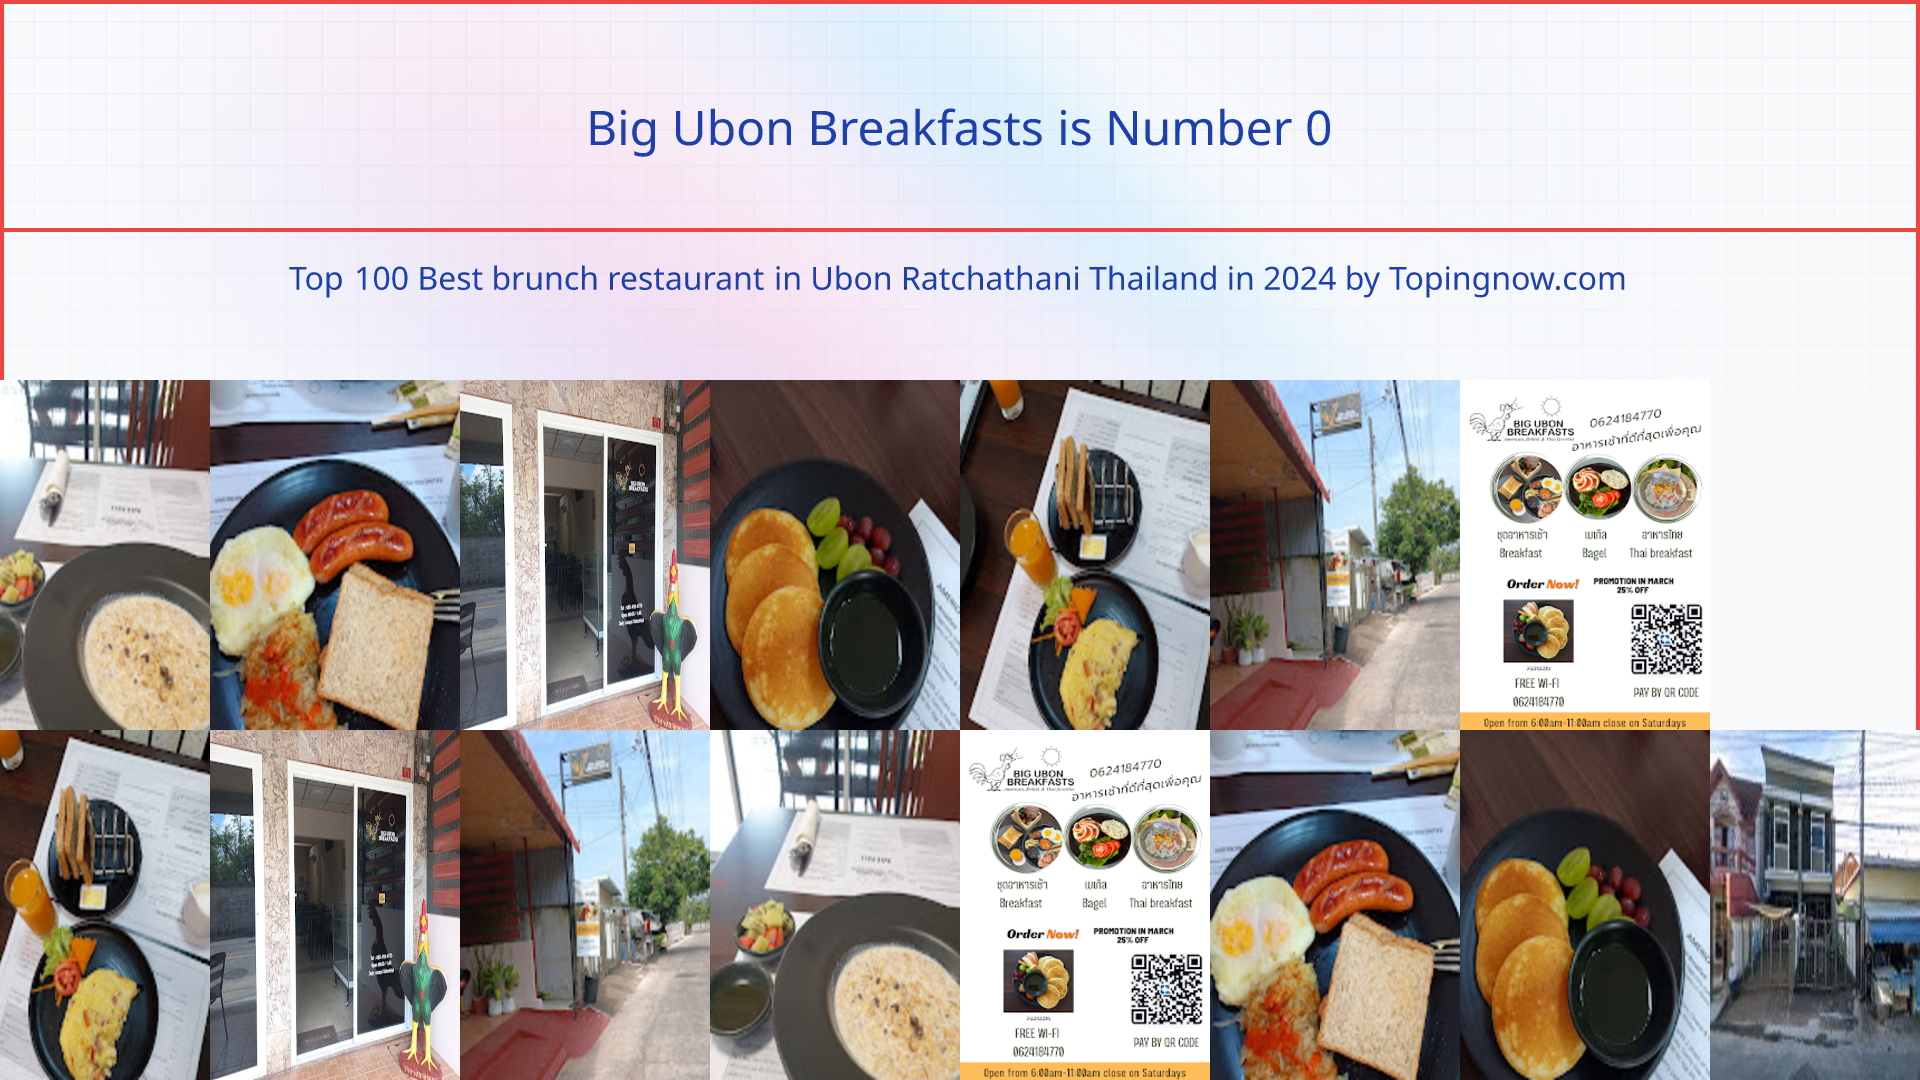 Big Ubon Breakfasts: Top 100 Best brunch restaurant in Ubon Ratchathani Thailand in 2024